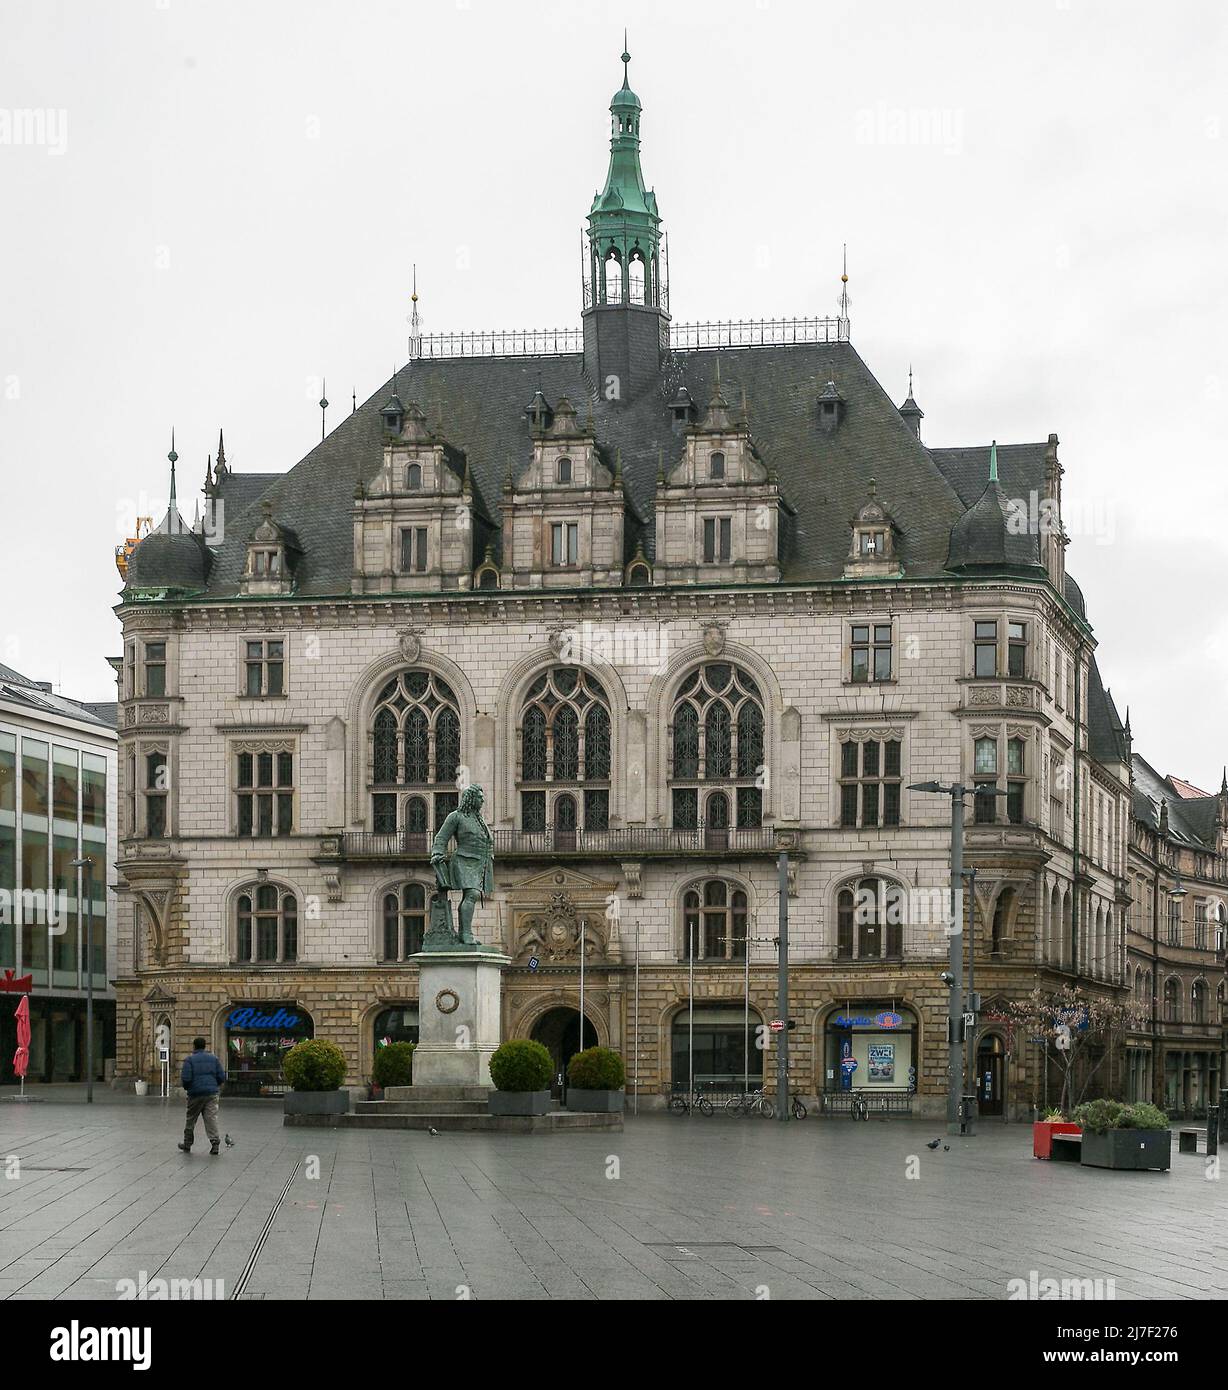 Halle S Marktplatz 2 5488 Stadthaus zur Ergänzung des Alten Rathauses erbaut 1891-94 von Emil Schreiterer Foto de stock